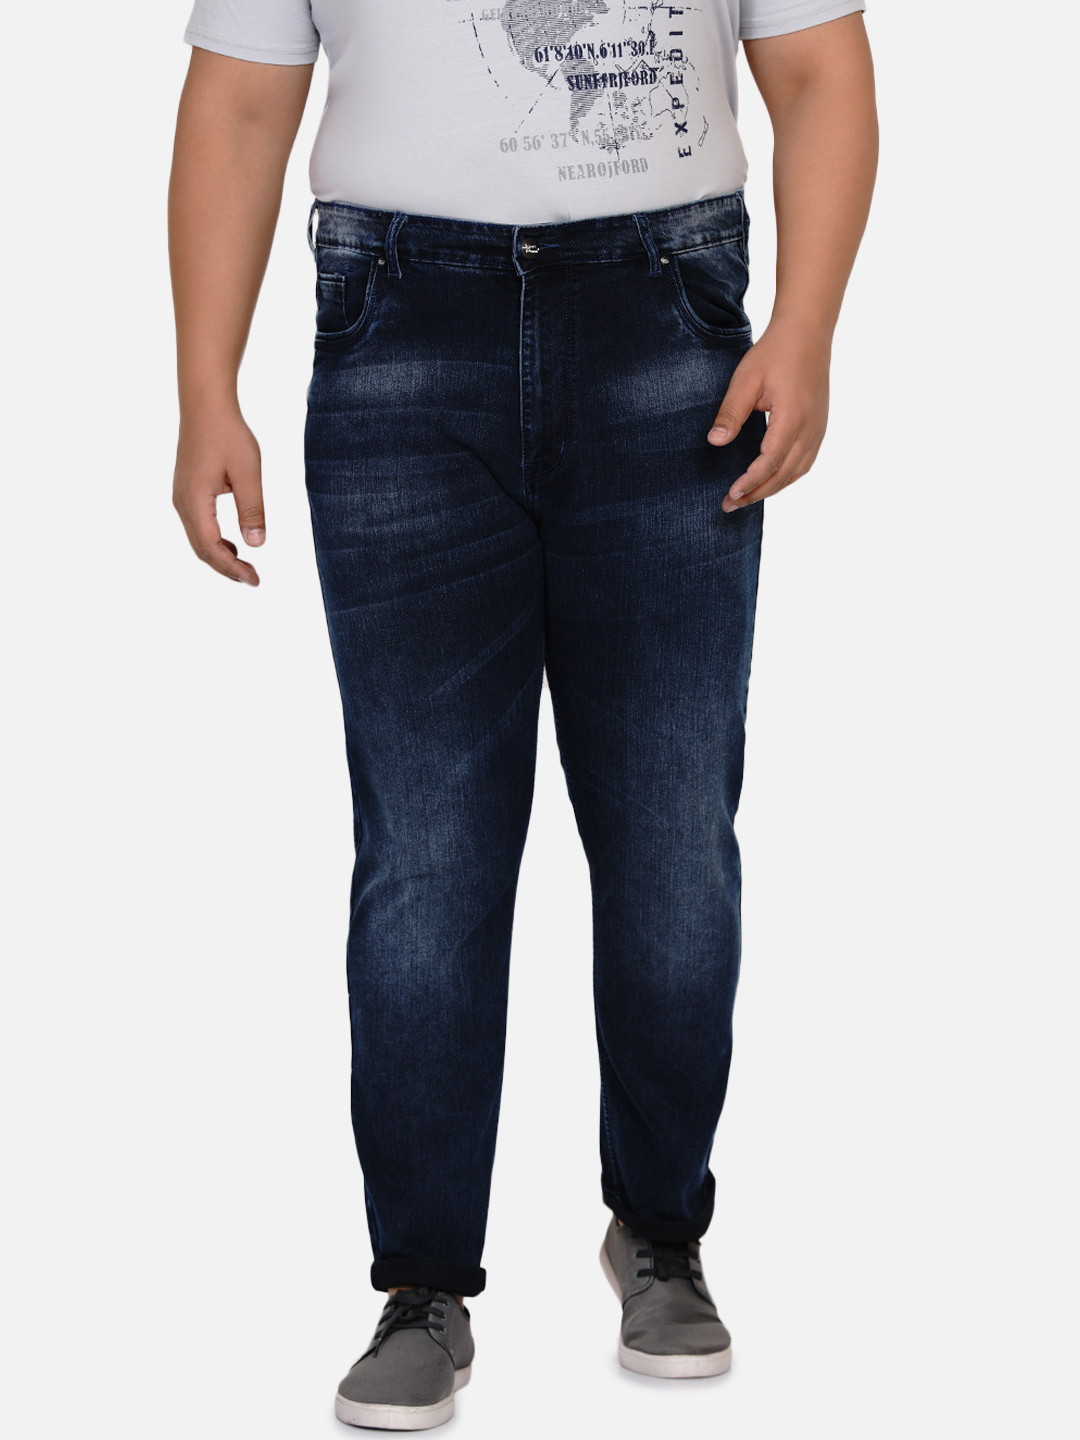 affordables/jeans/EJPJ2029/ejpj2029-2.jpg